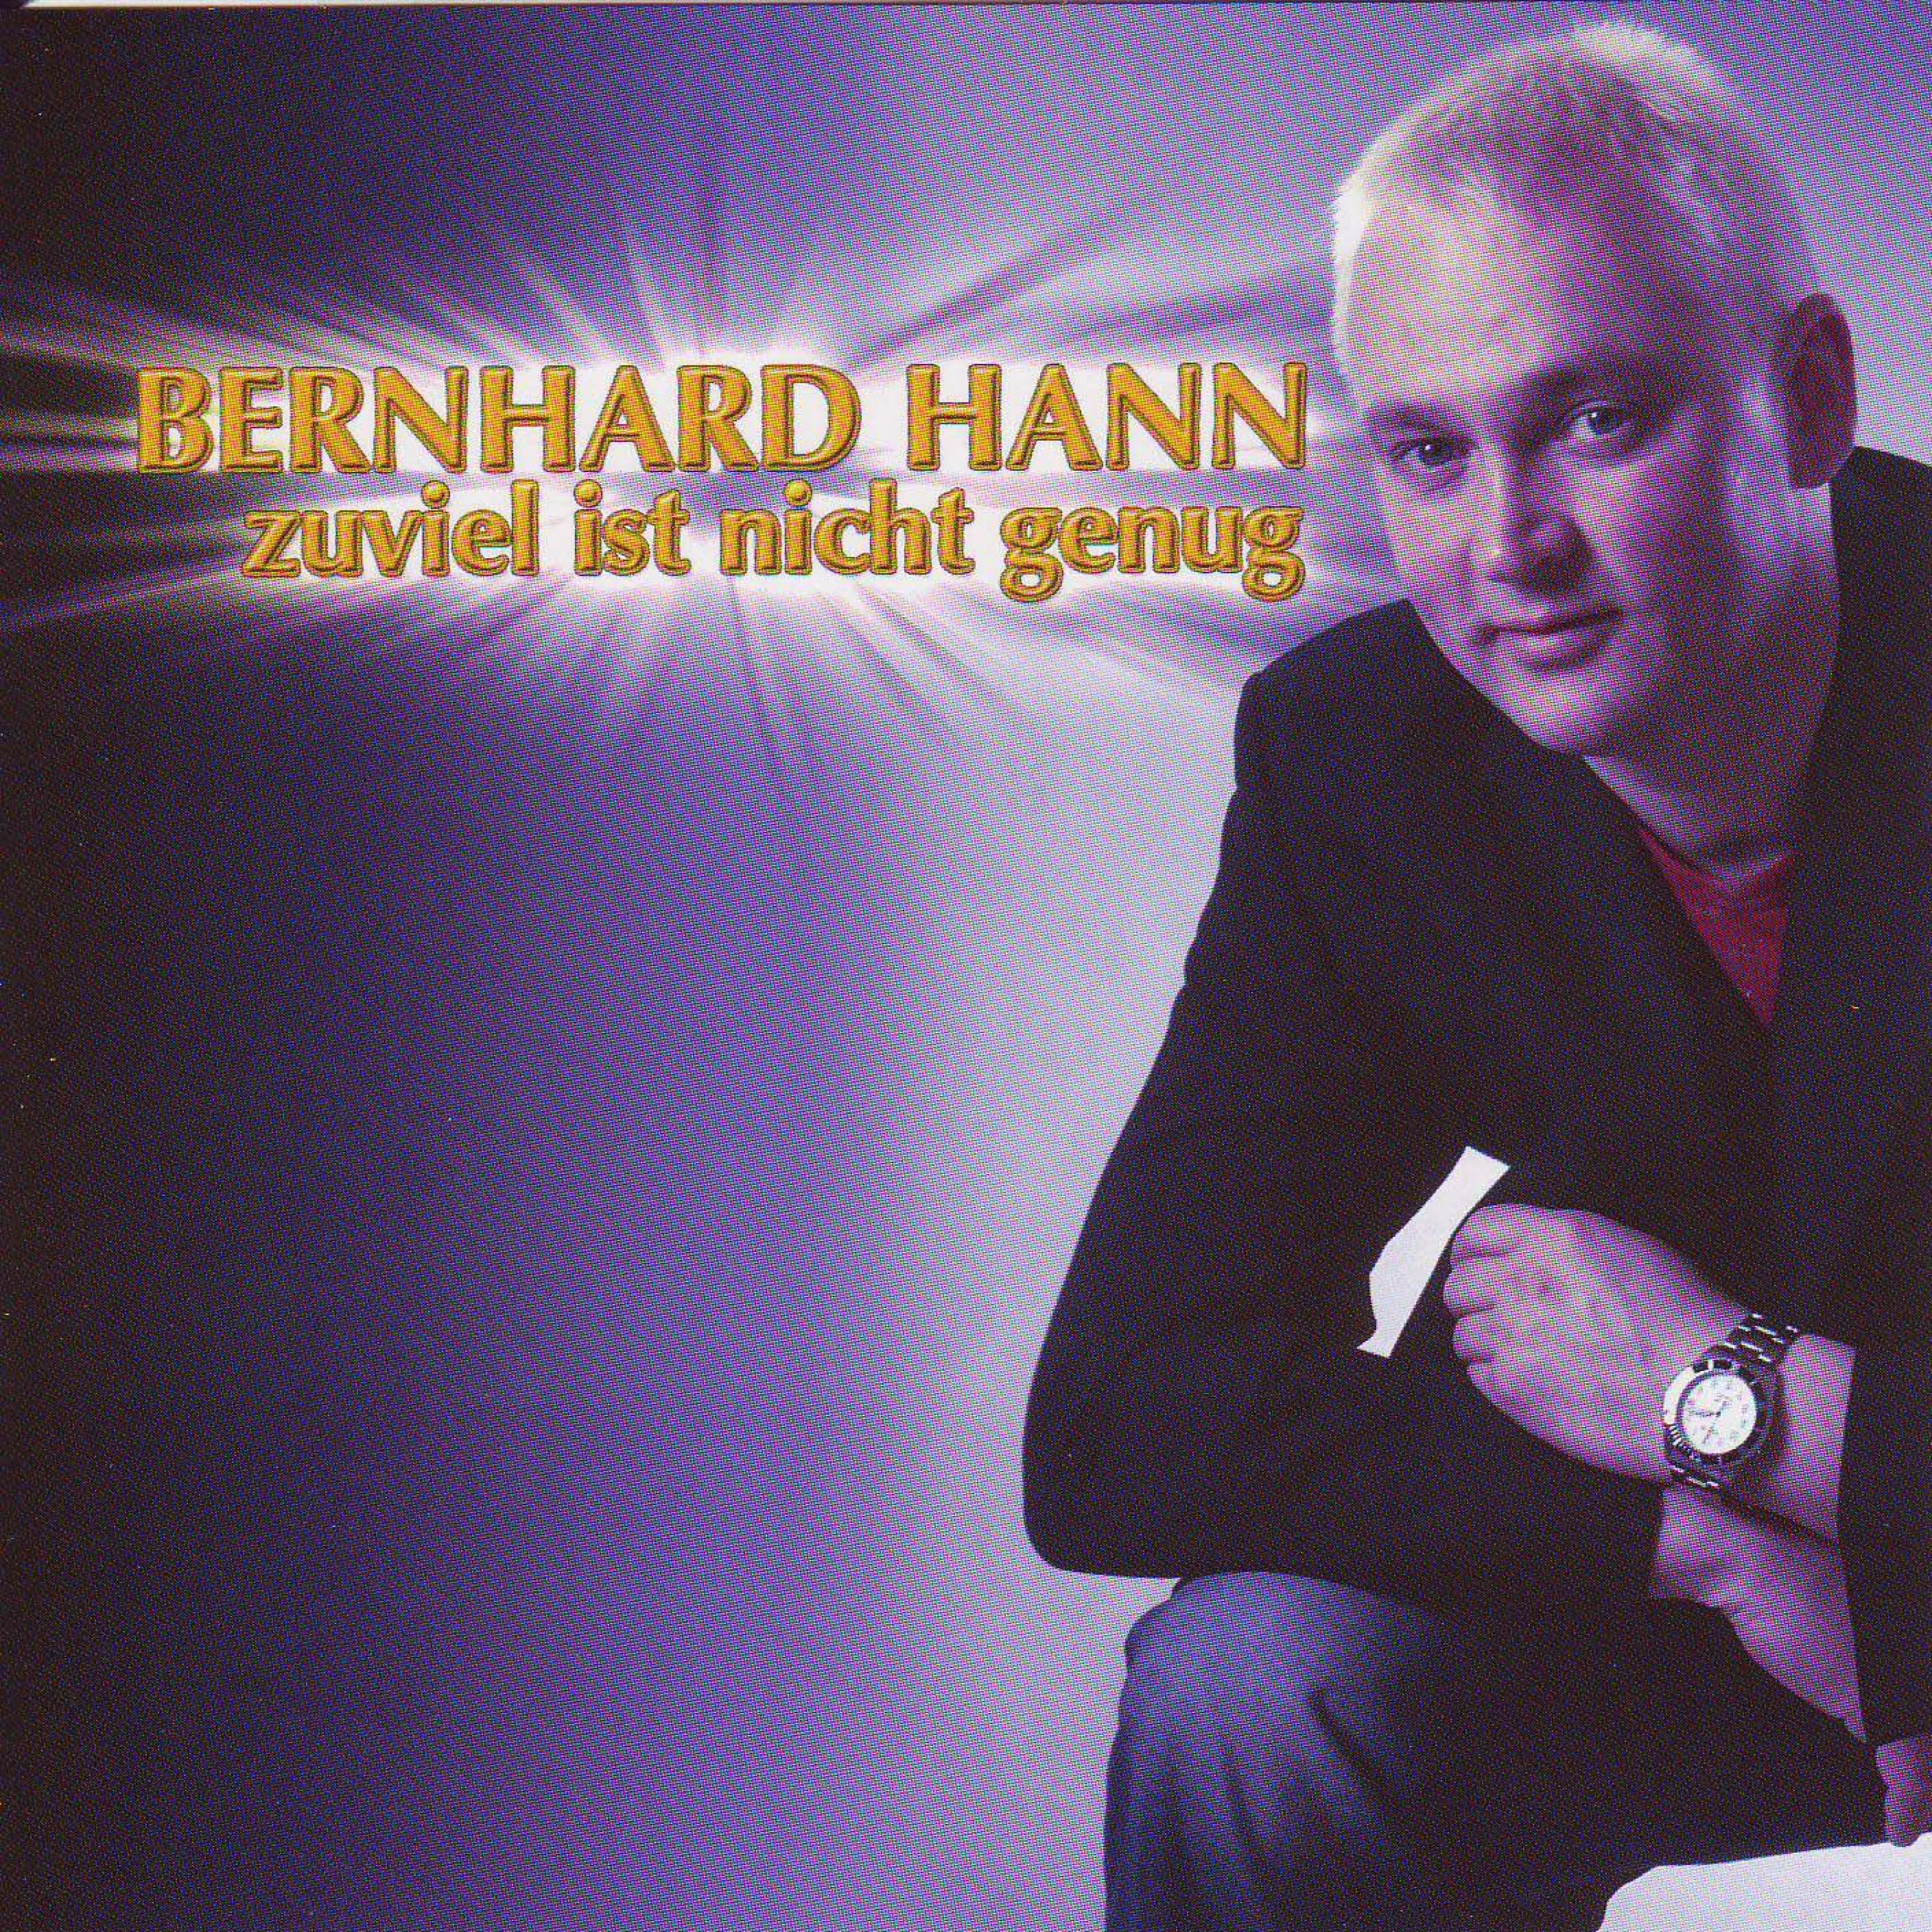 Bernhard Hann - Zuviel ist nicht genug (Maxi-Mix)